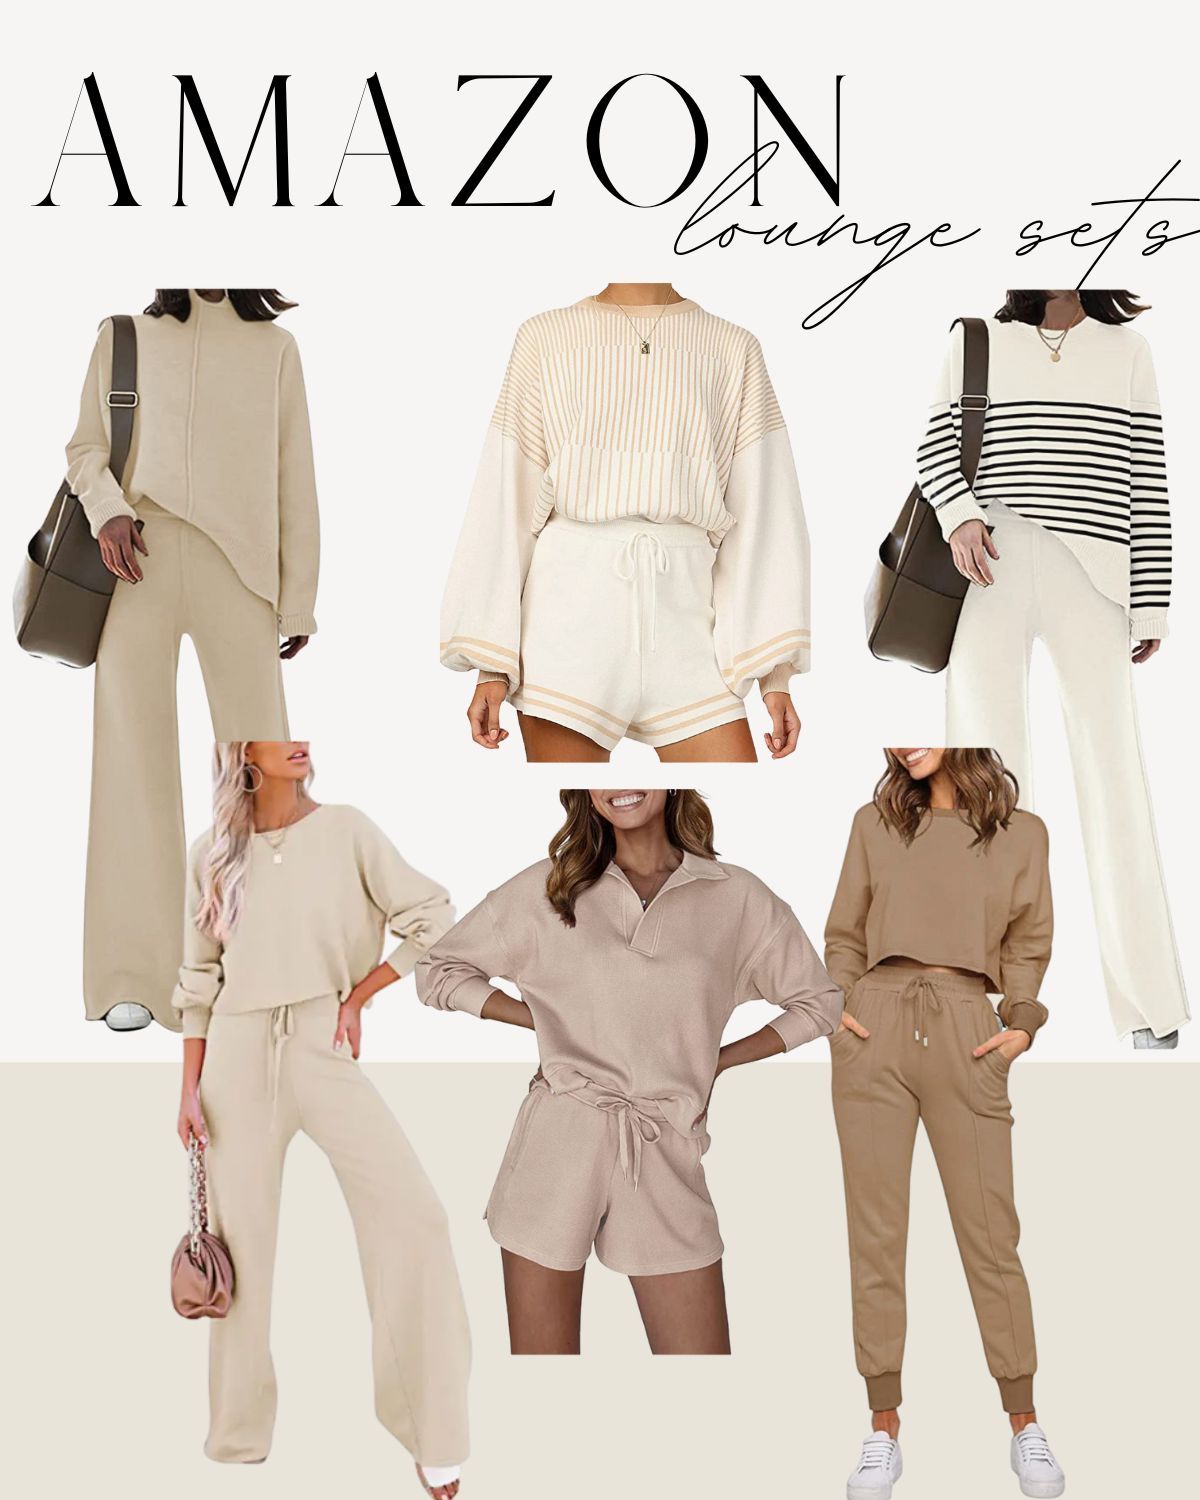 Styled By Nina's Amazon Page | Amazon (US)